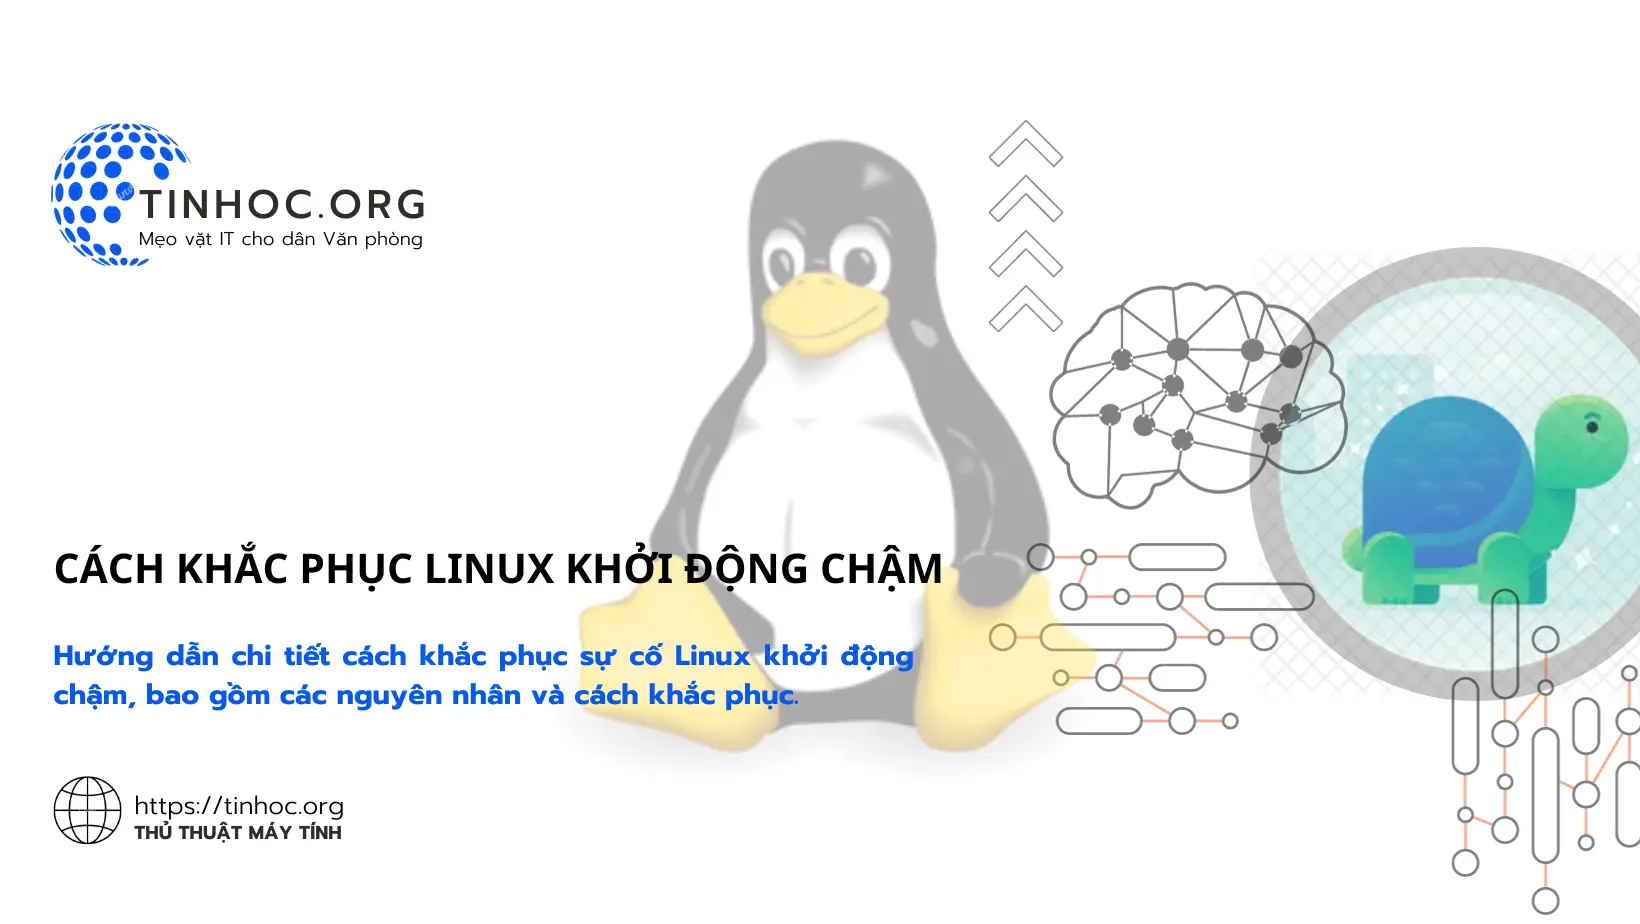 Hướng dẫn chi tiết cách khắc phục sự cố Linux khởi động chậm, bao gồm các nguyên nhân và cách khắc phục.